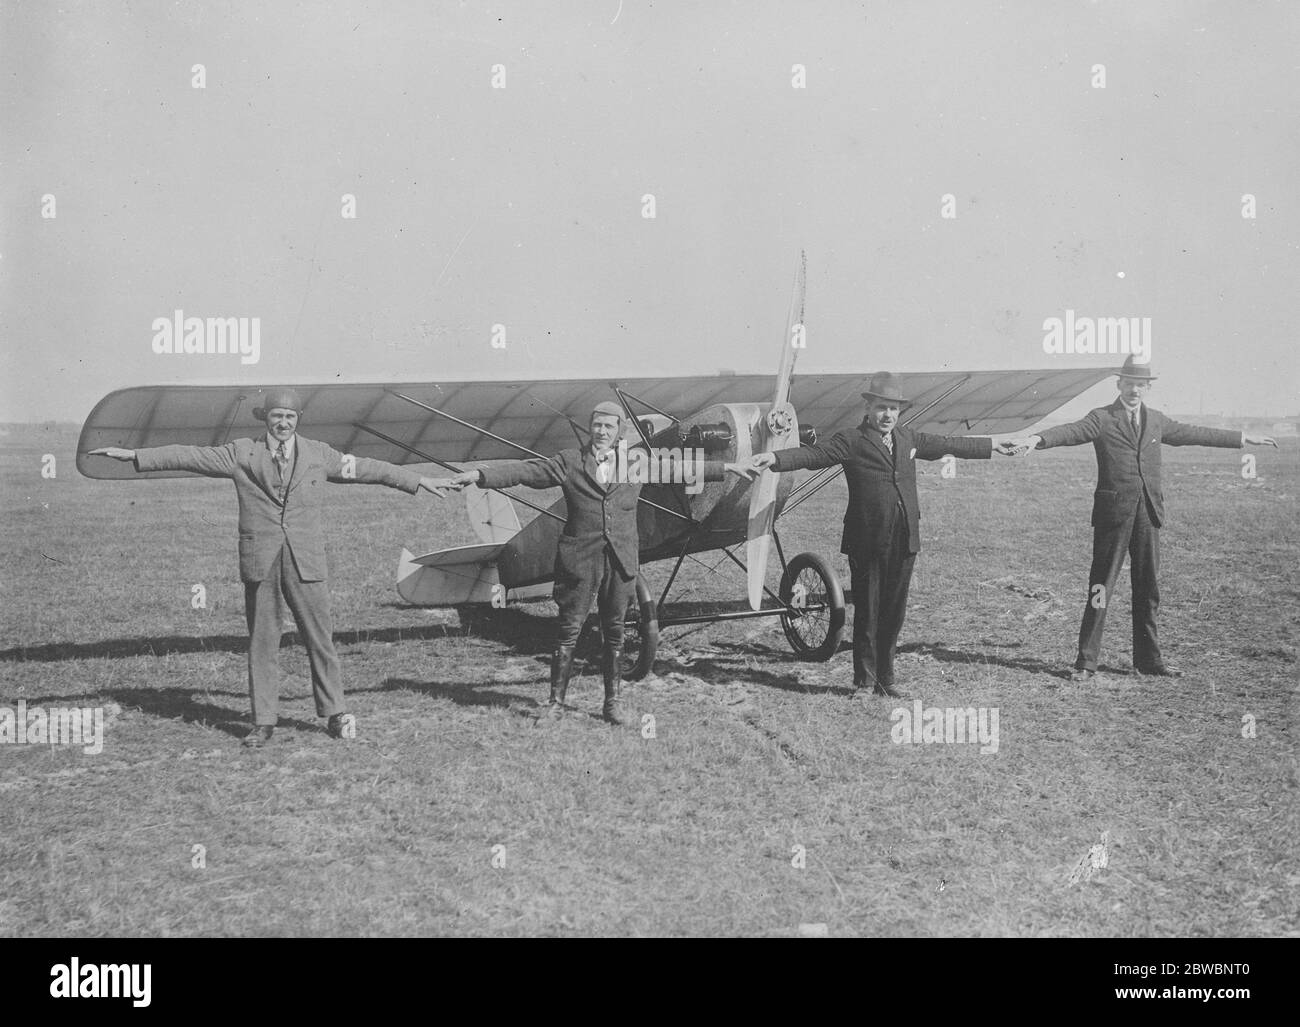 L'avion sportif le petit monoplan sportif a été construit par les frères Rieseler Johannisthal . Son moteur de deux cylindres horizontaux est refroidi par air et l'ensemble de la machine pèse environ 330 lbs . Sa taille réelle est bien illustrée dans la photographie du 8 avril 1921 Banque D'Images